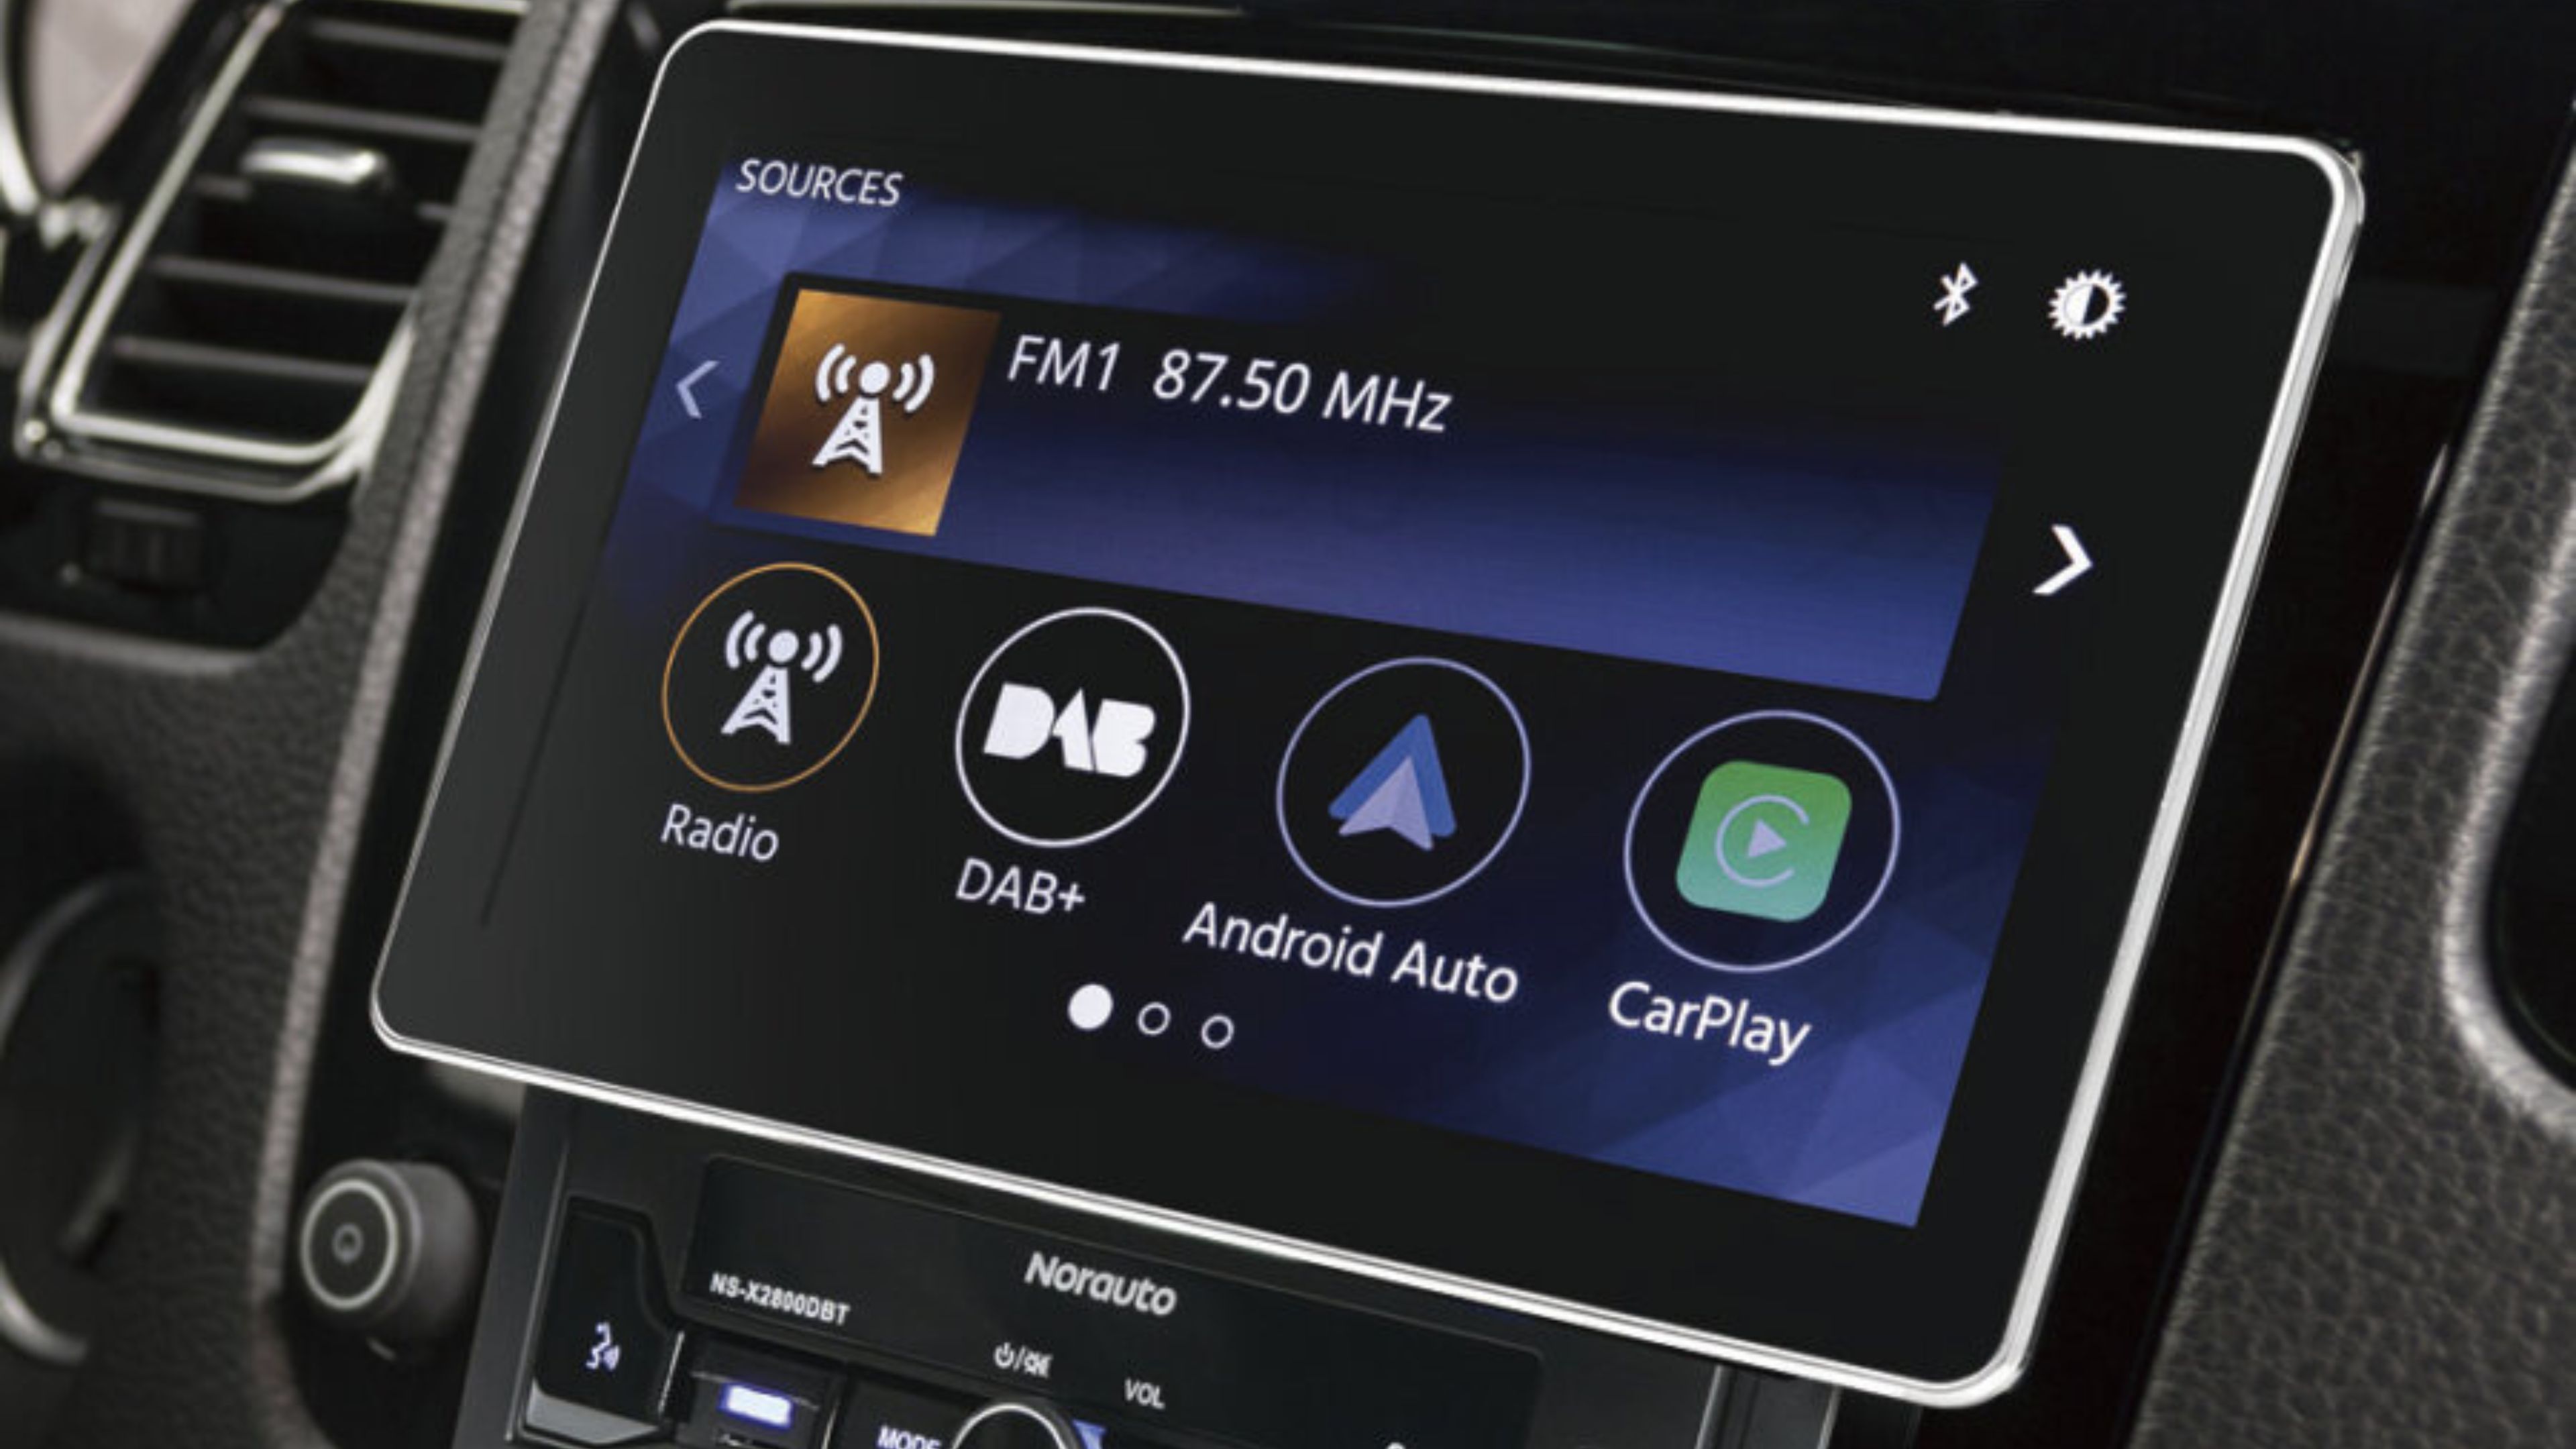 Autoradio compatible con CarPlay y Android Auto Norauto